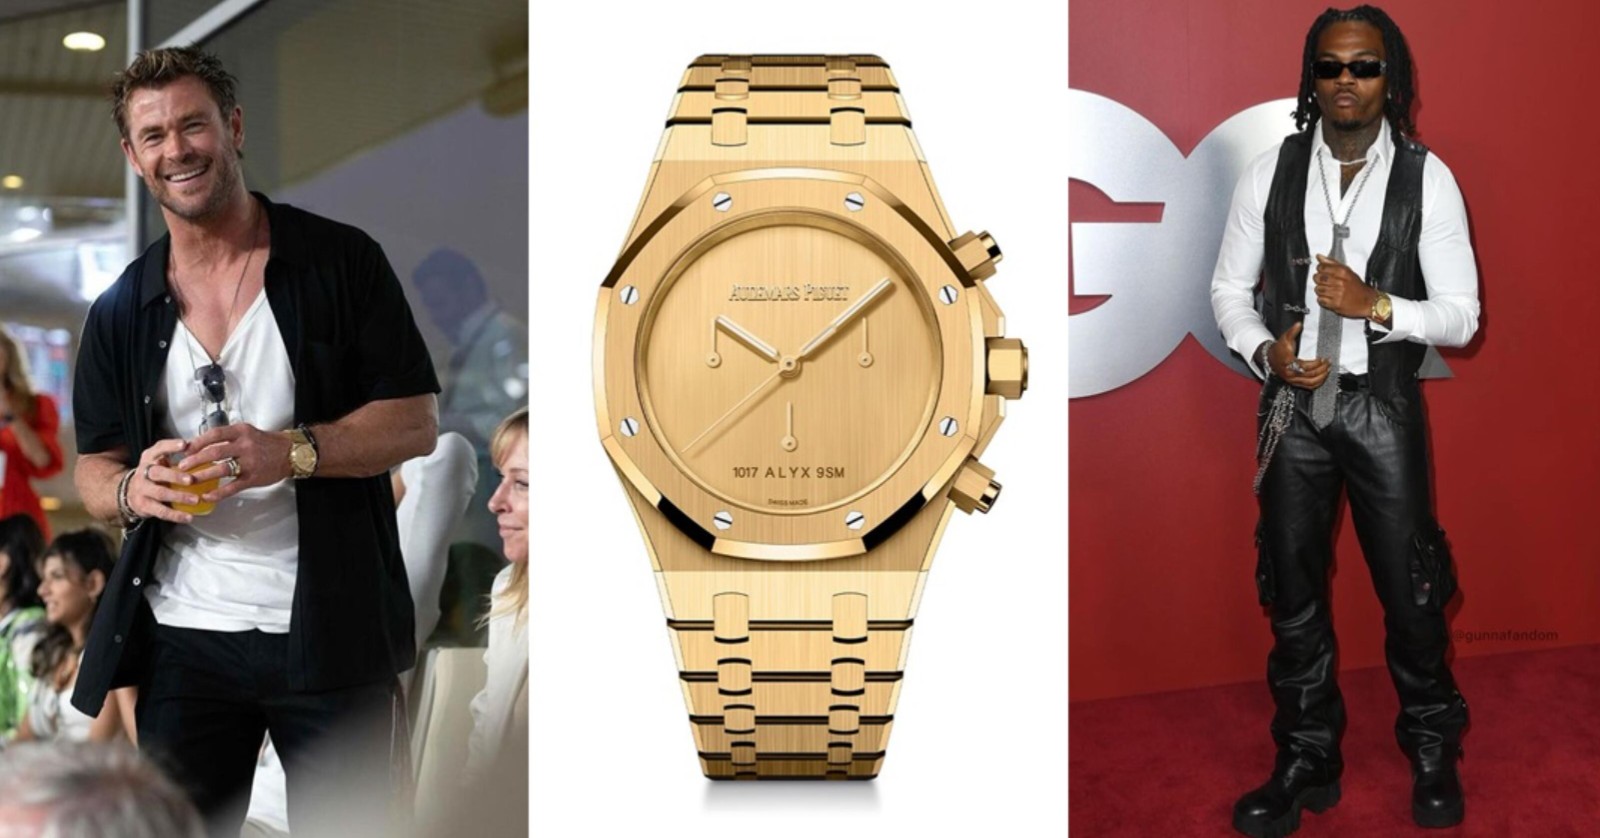 雷神索尔和知名饶舌歌手戴的是同一款錶- 皇家橡树 x 1017 Alyx 9SM 联名款